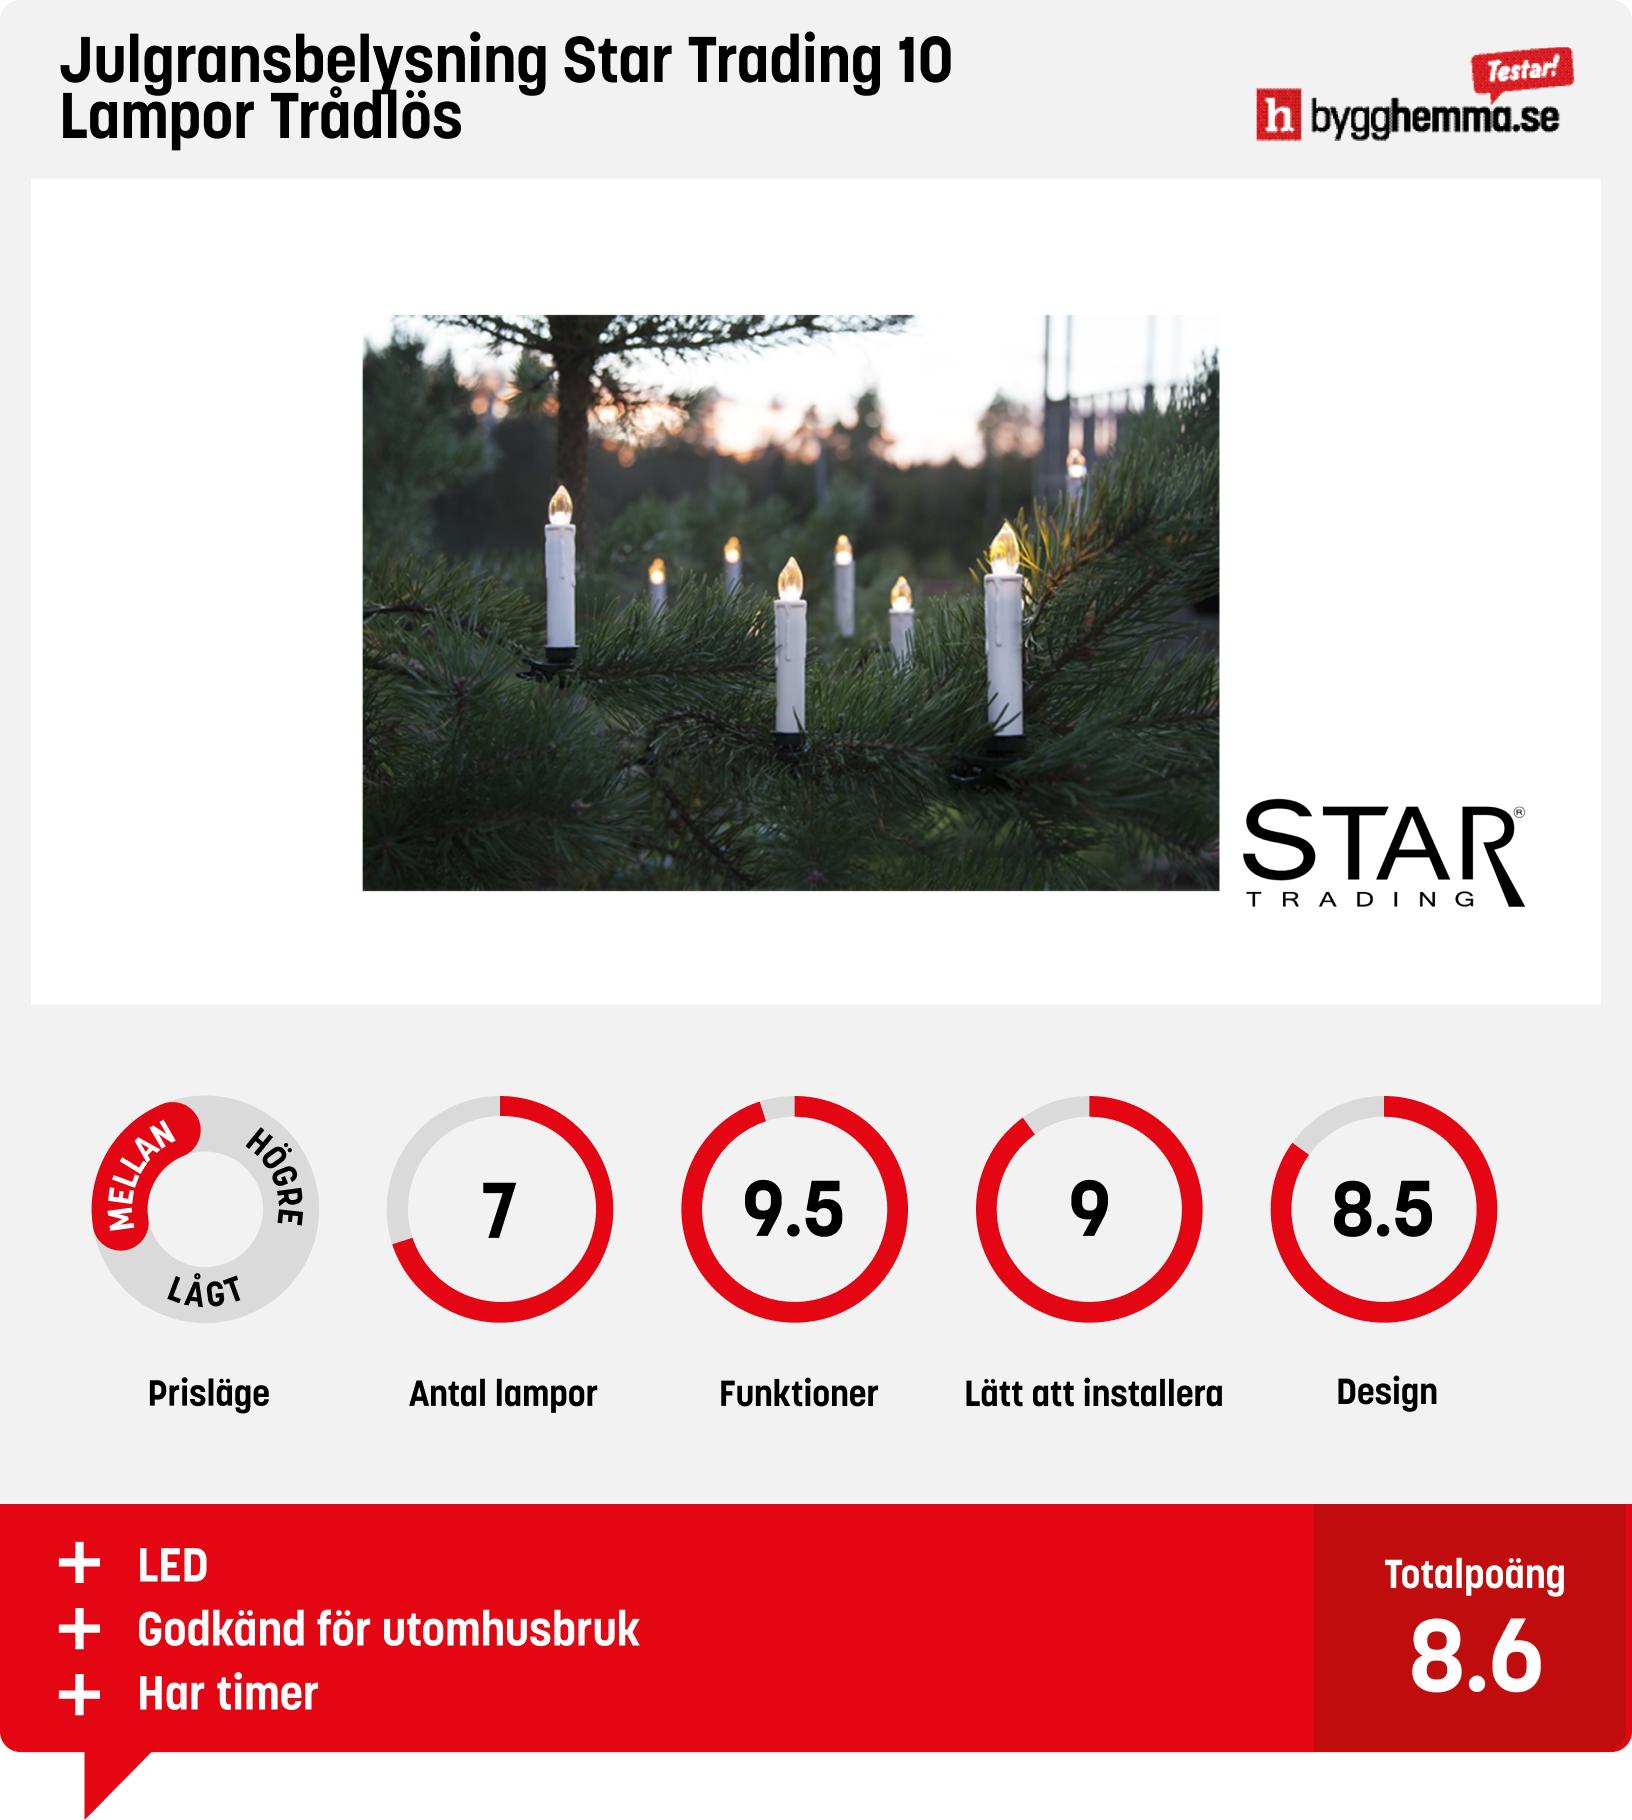 Julgransbelysning bäst i test - Julgransbelysning Star Trading 10 Lampor Trådlös